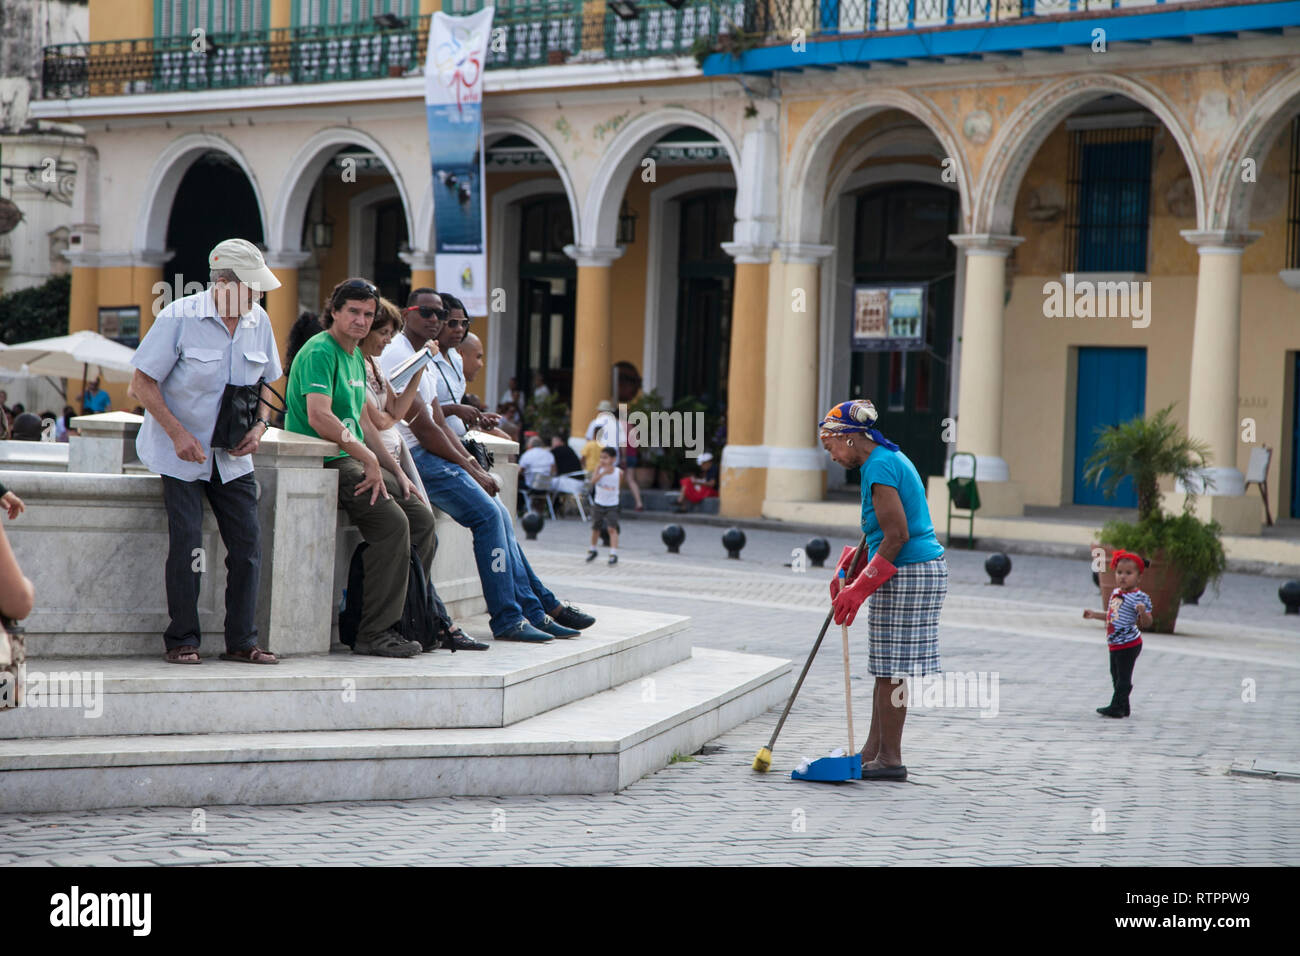 L'Avana, Cuba - 20 Gennaio 2013: una vista delle strade della città con il popolo cubano. Una spazzatrice ritorna in un pozzo di acqua. Foto Stock